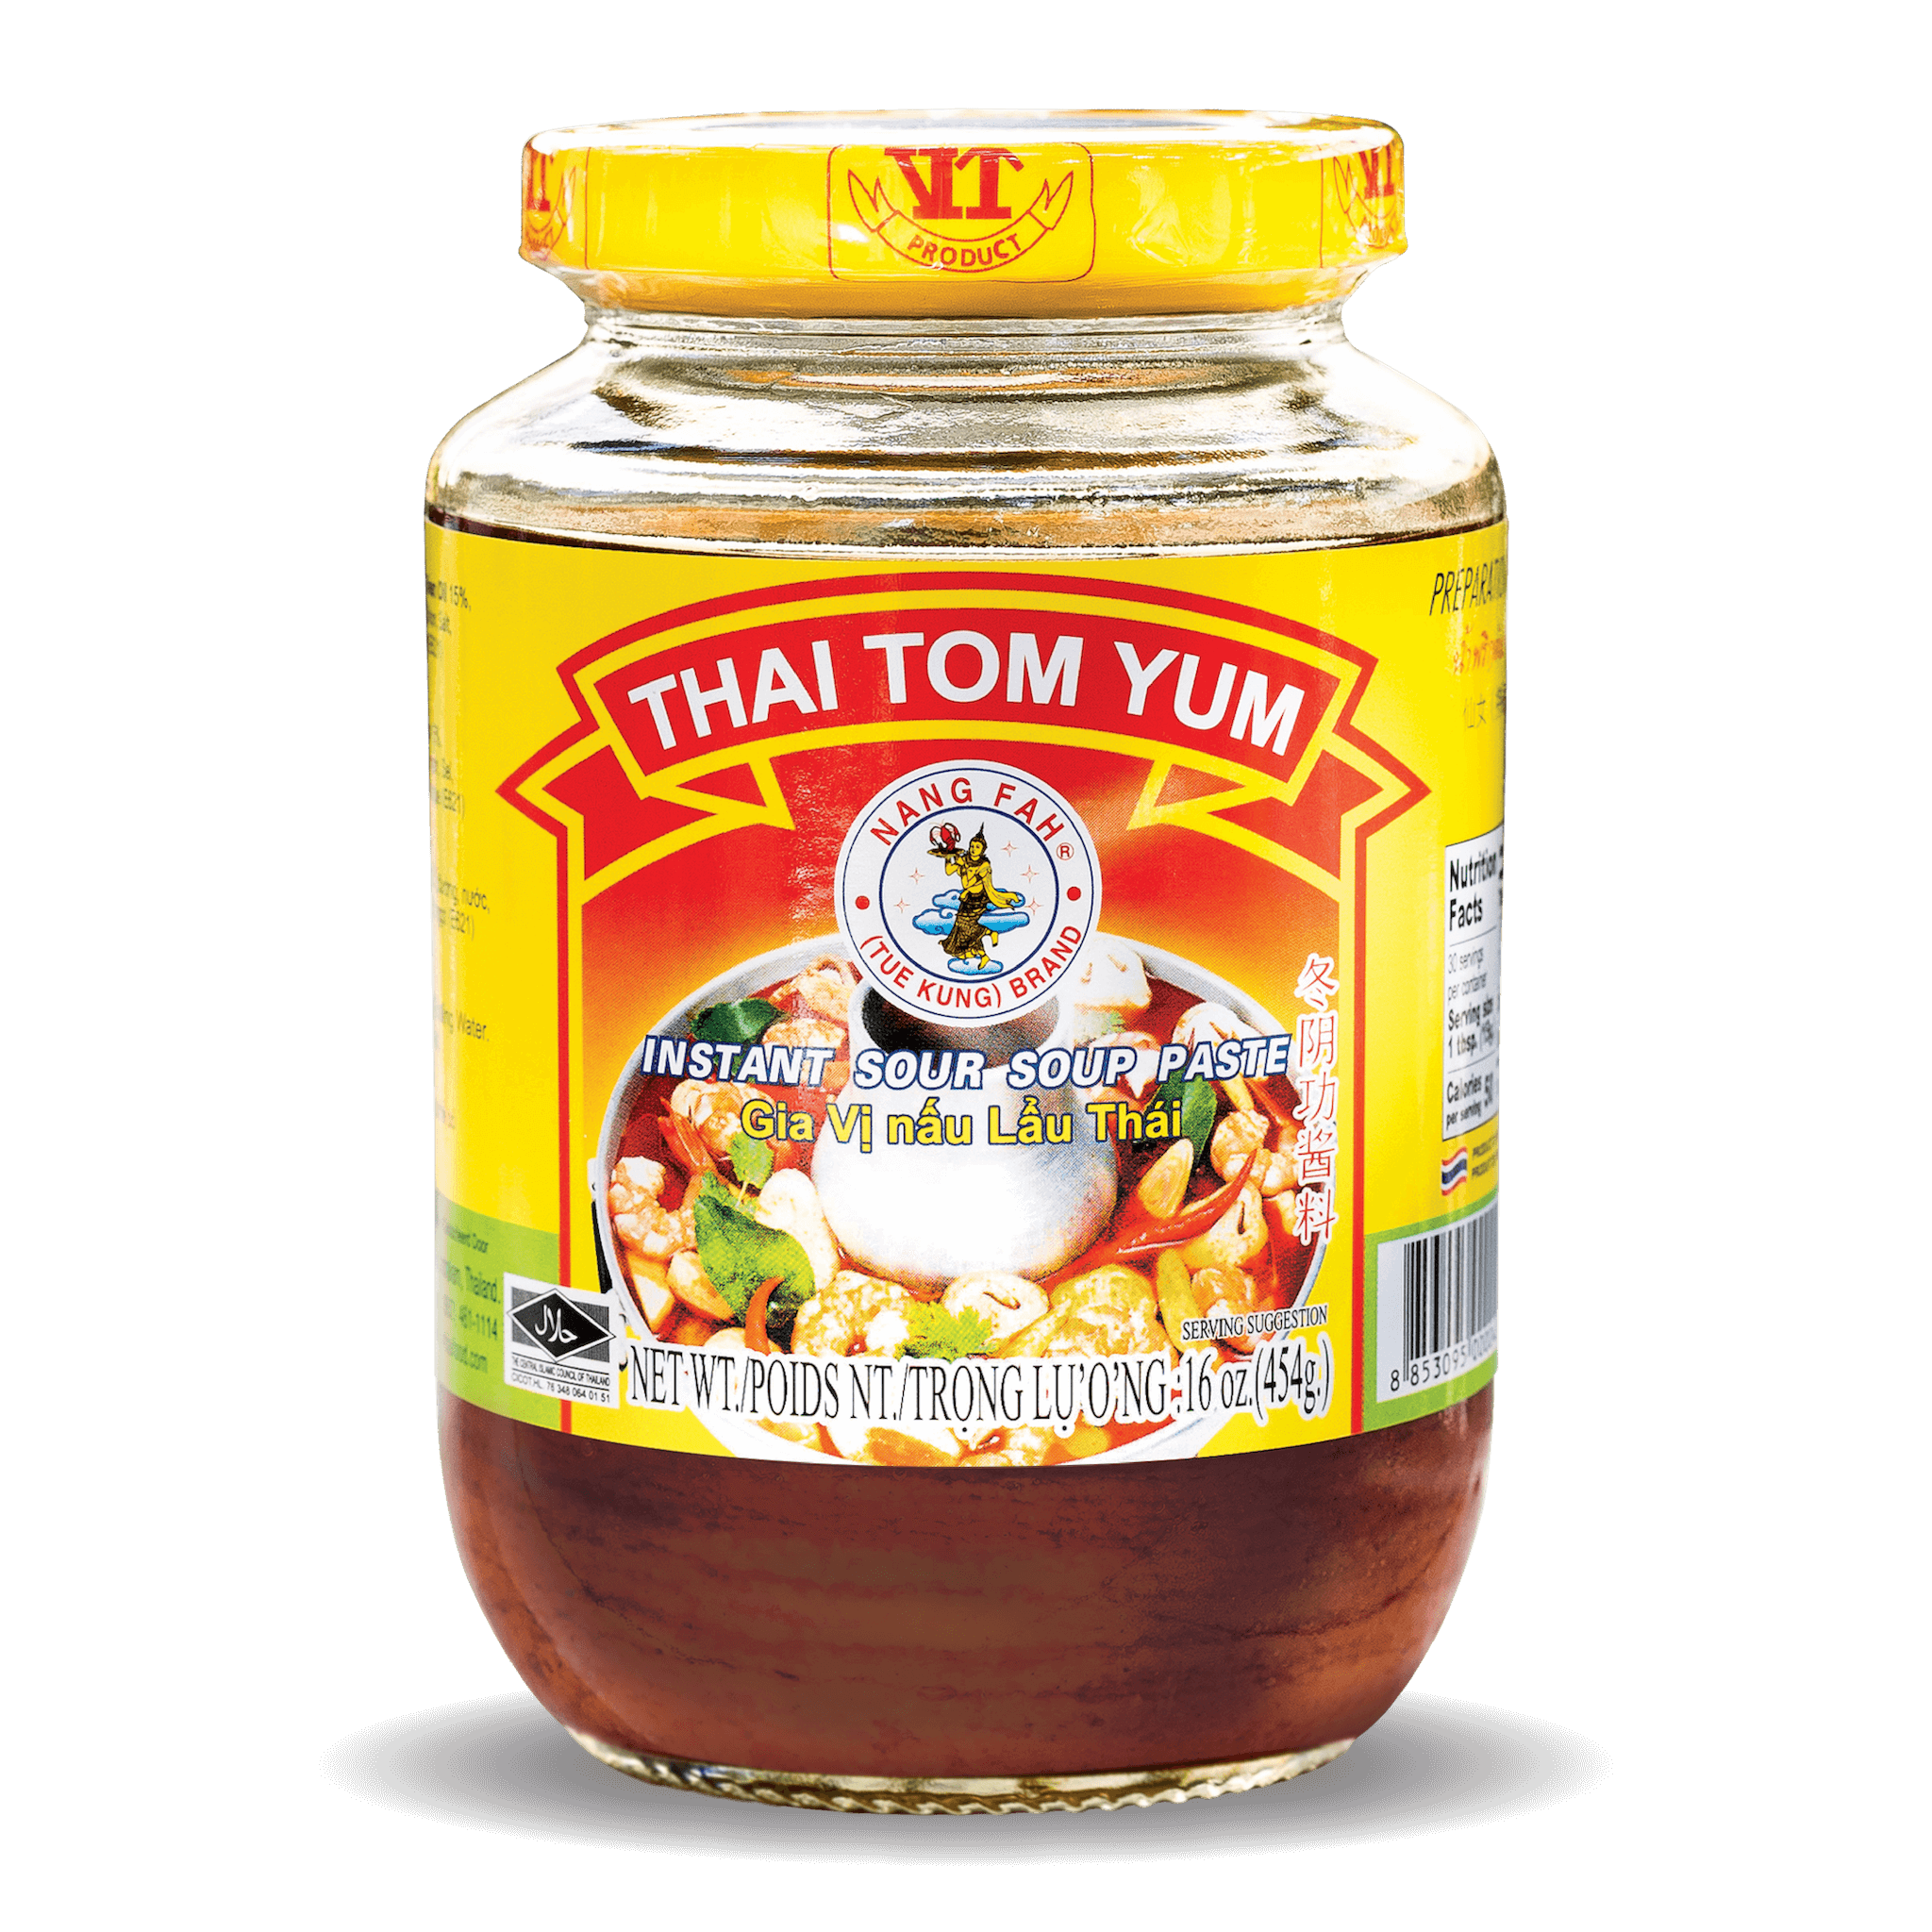 Gia vị nấu lẩu Thái Tom Yum 454g